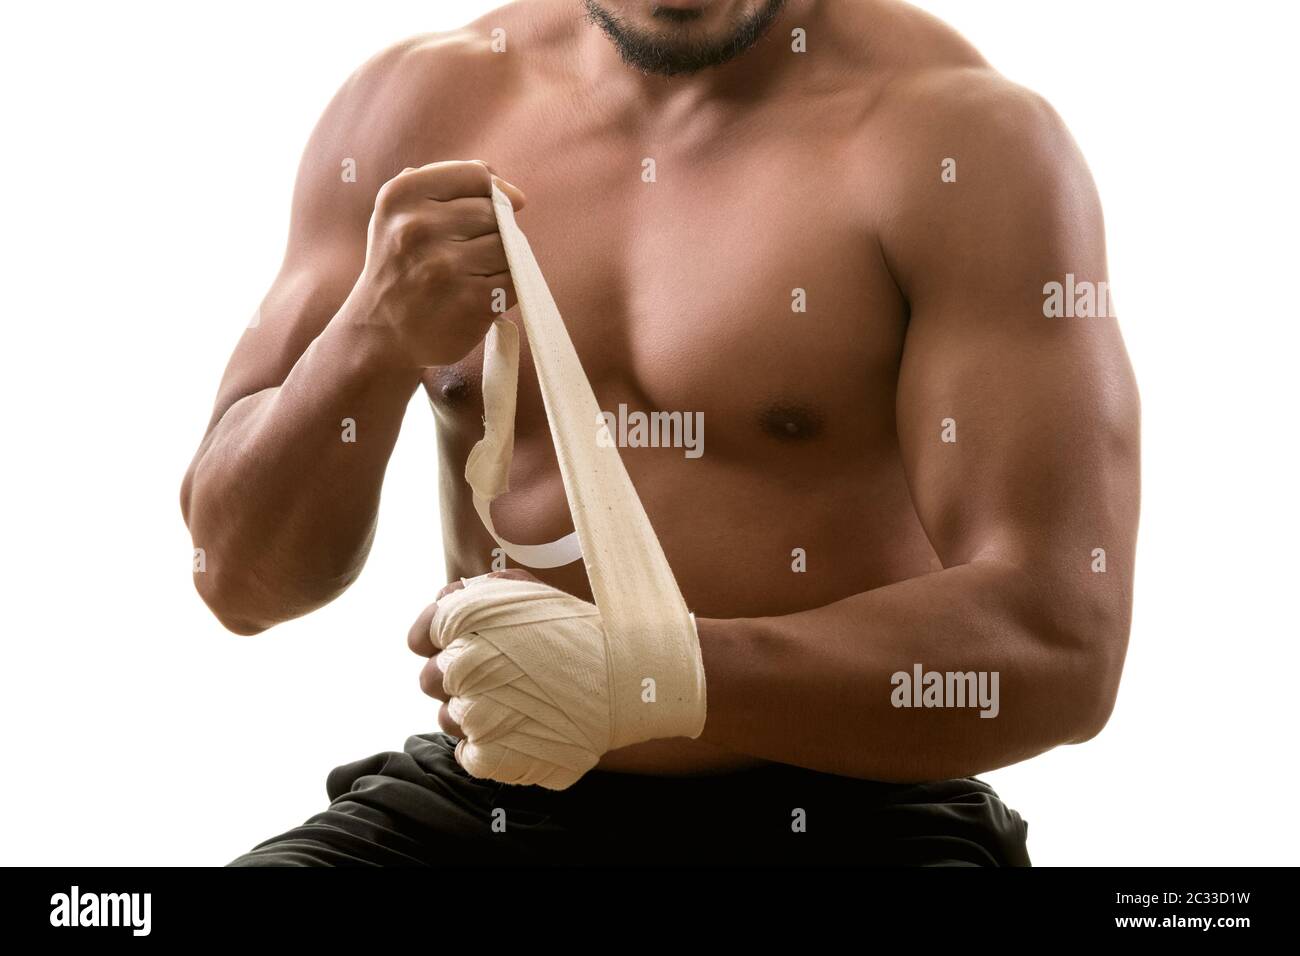 Jeune homme musclé fort mettant sur des bandages, isolé sur fond blanc. Arts martiaux, fitness, concept d'entraînement Banque D'Images